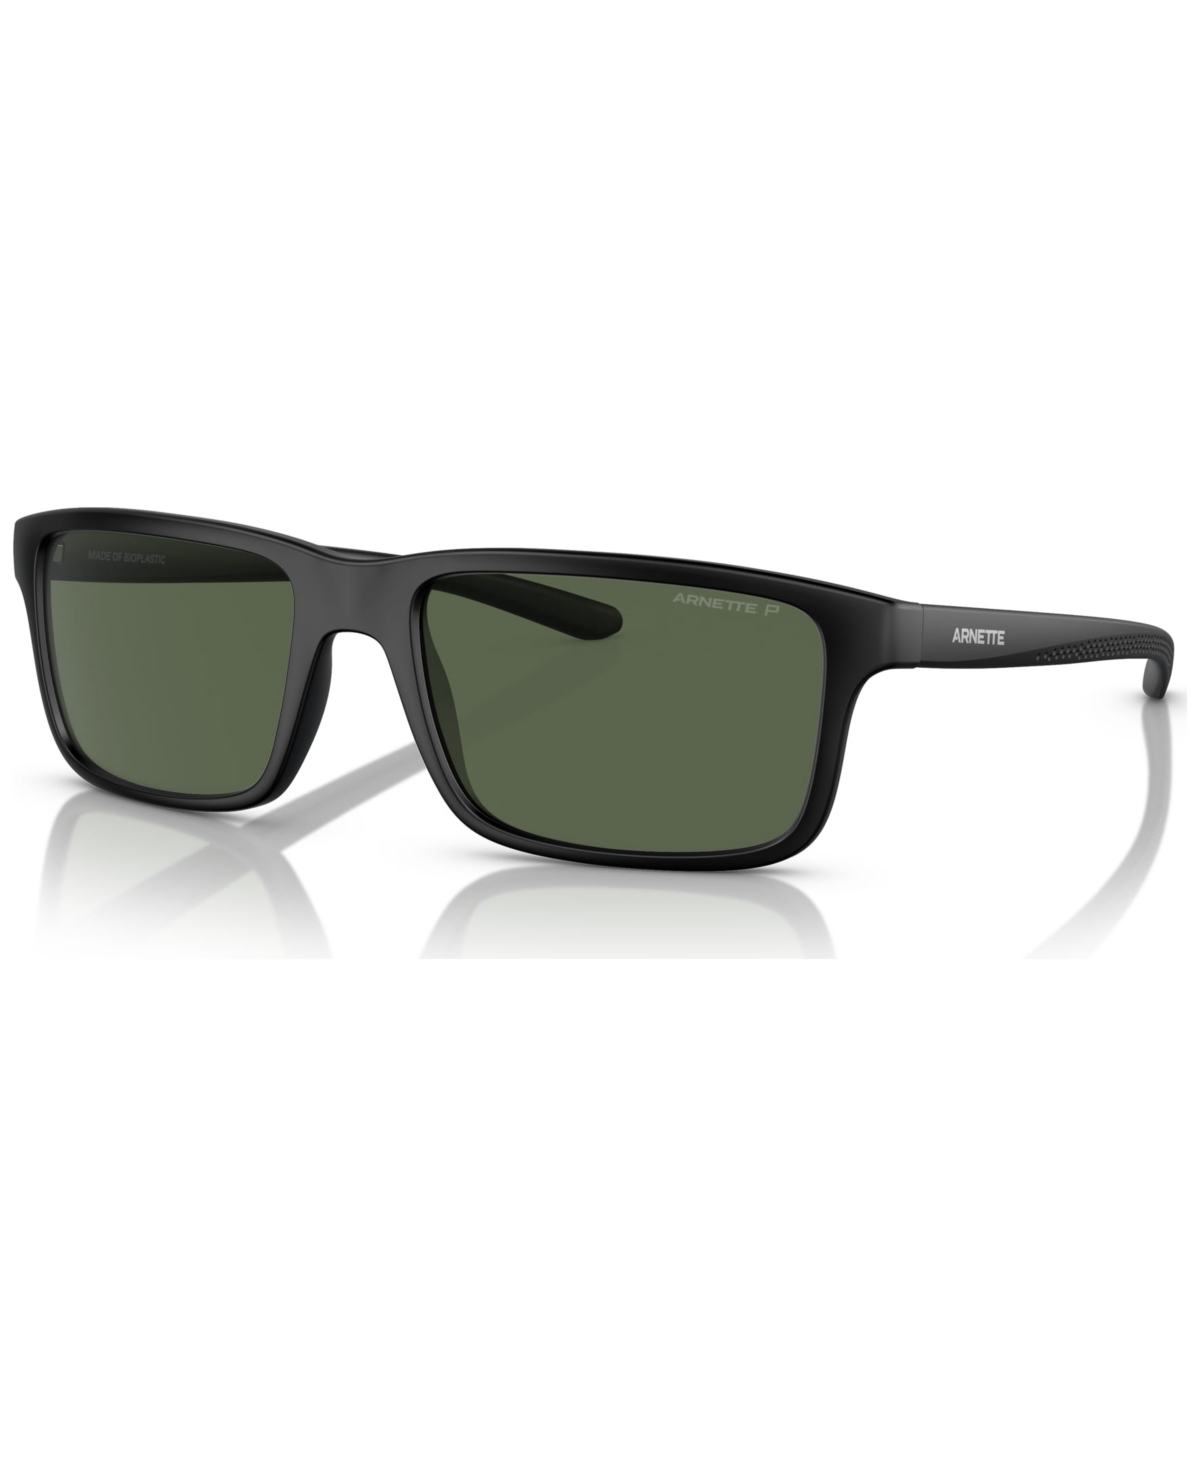 Arnette Men's Polarized Sunglasses, An432257-p 57 In Black